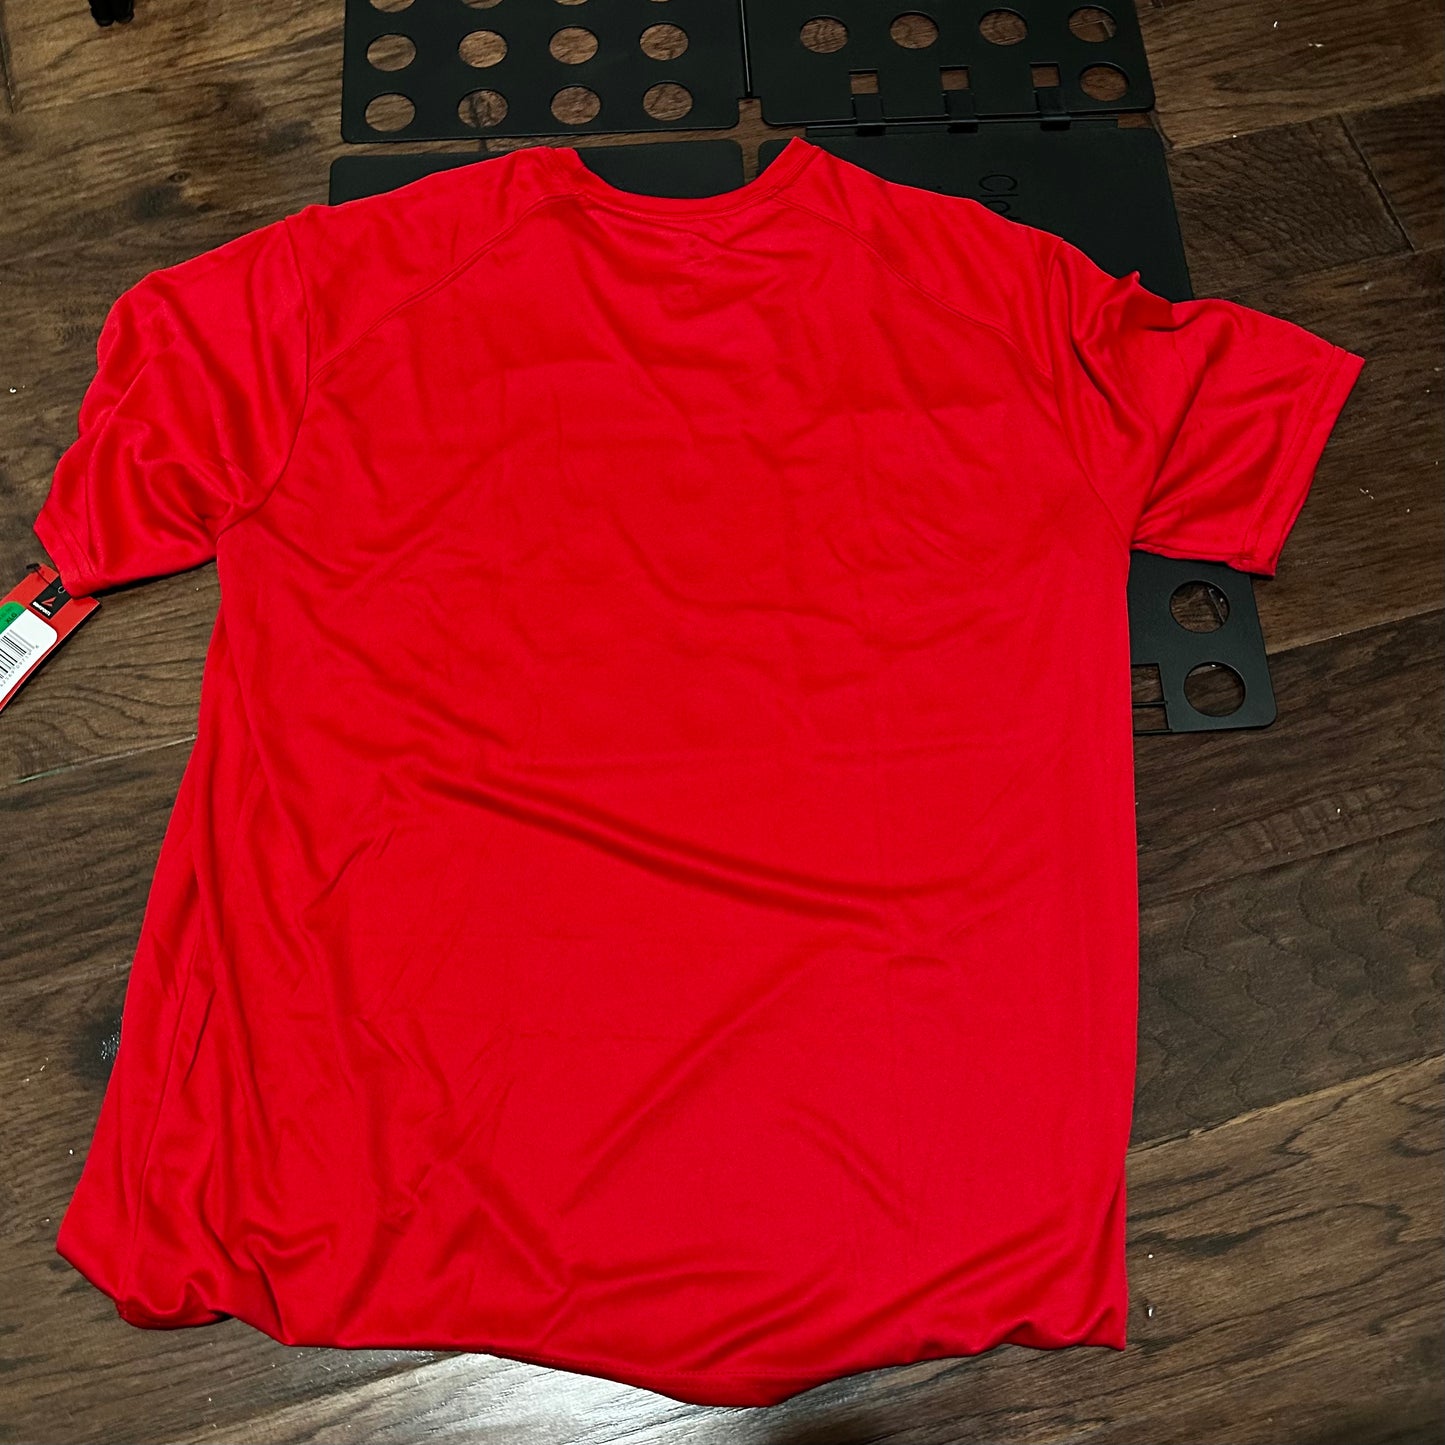 BSN sport Performance Red Shirt - XL